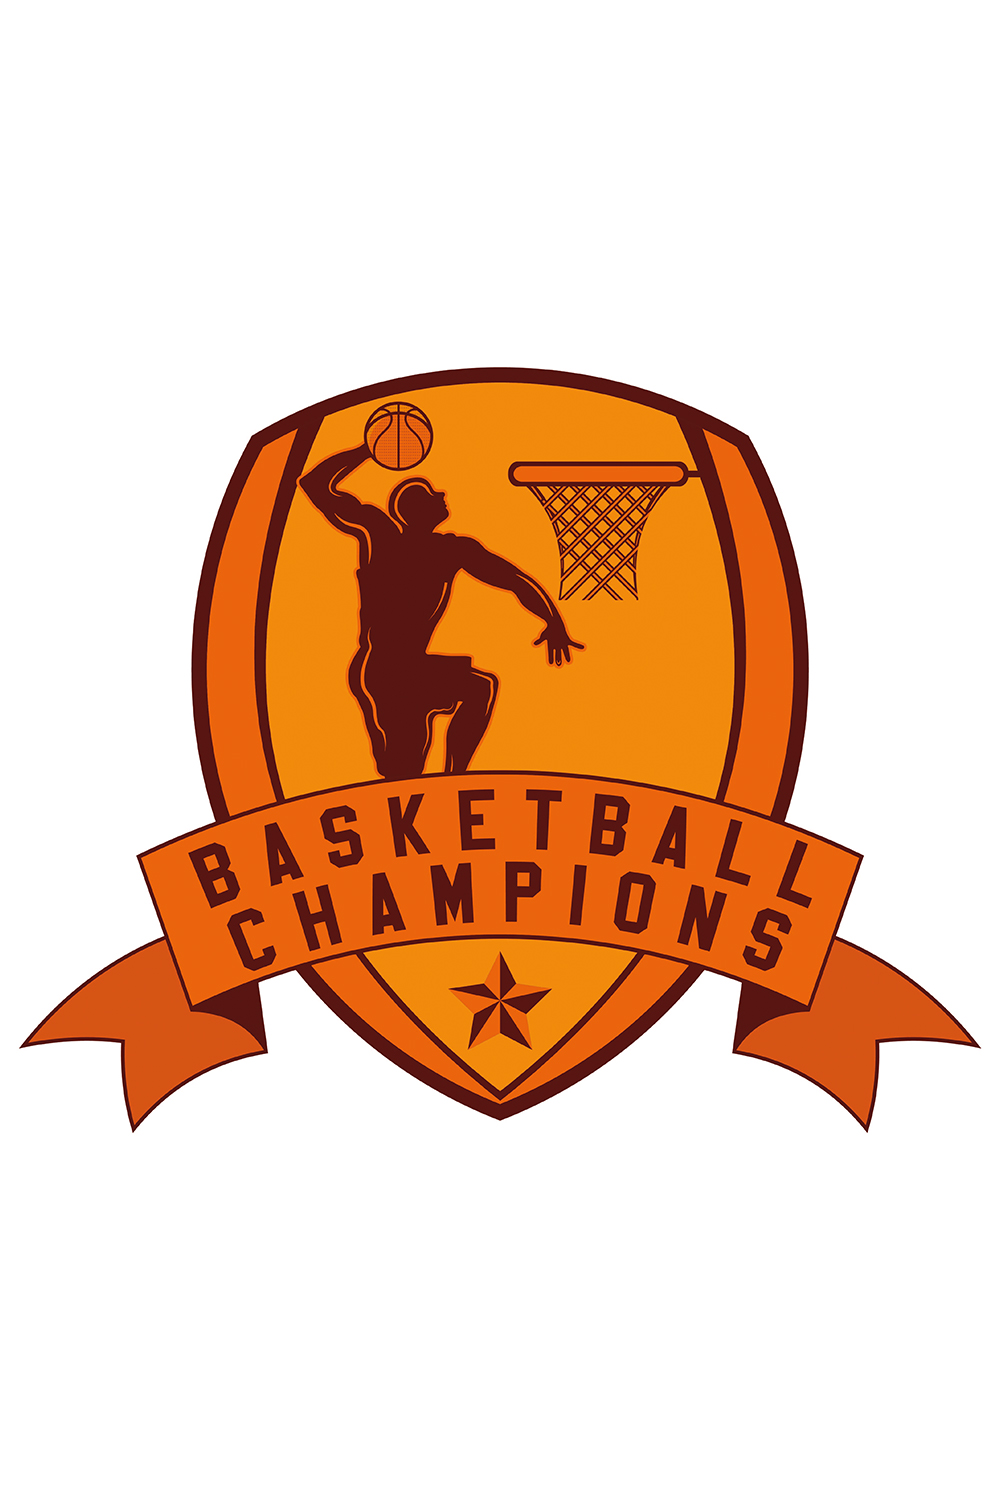 Bundle of 4 Basketball Logos pinterest image.